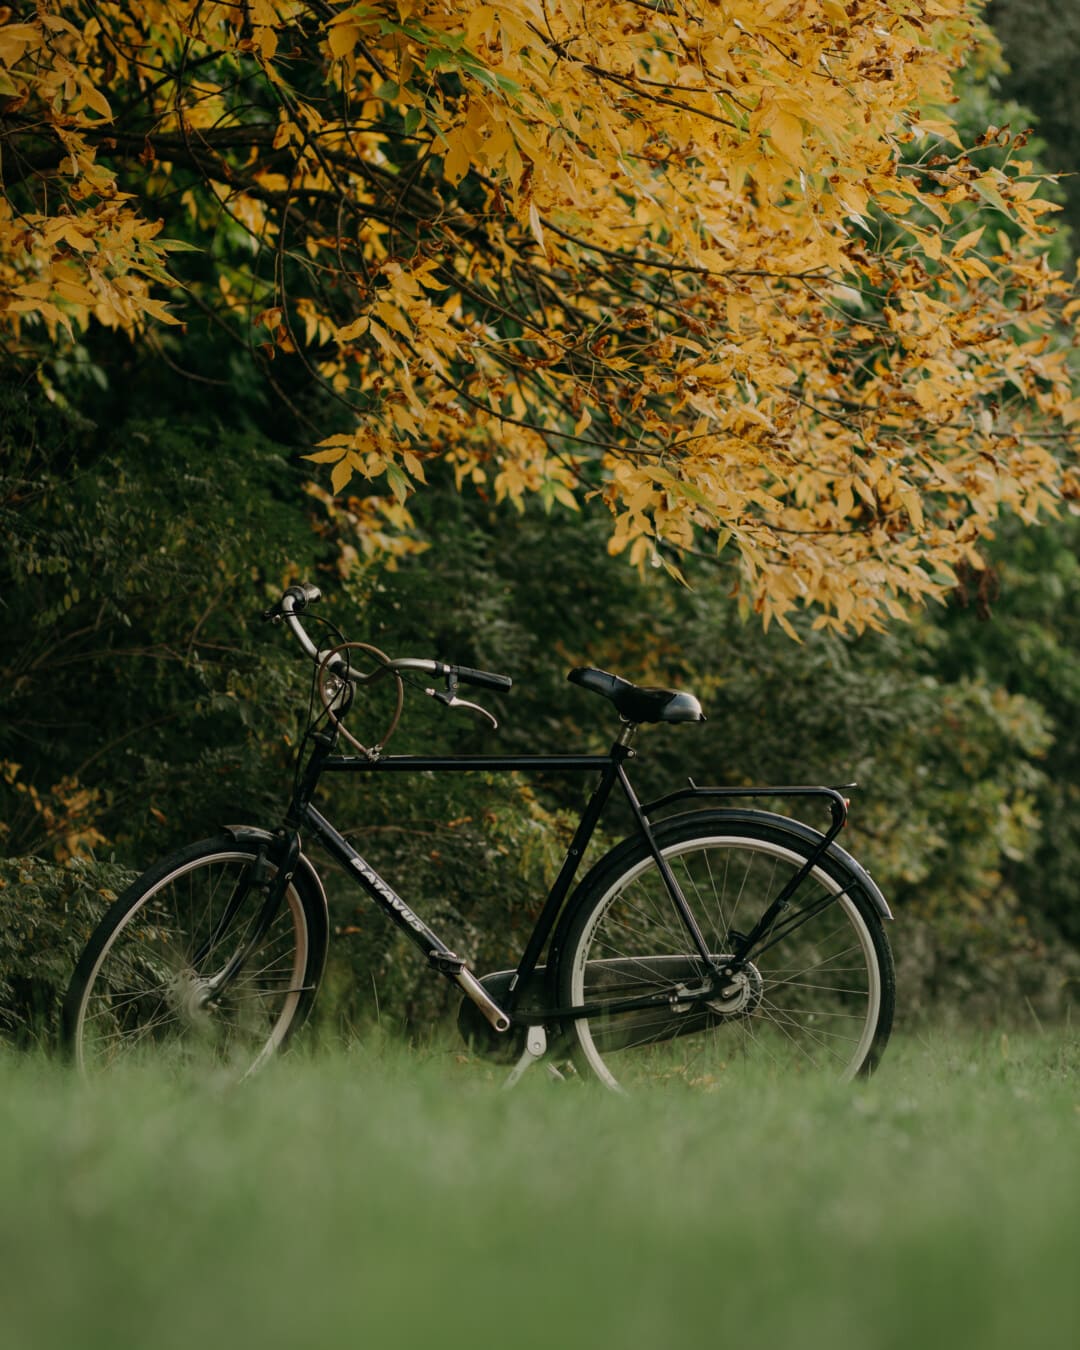 biciclete, negru, clasic, stil vechi, Sezonul de toamnă, zona rurală, roata, biciclete, frunze, lemn